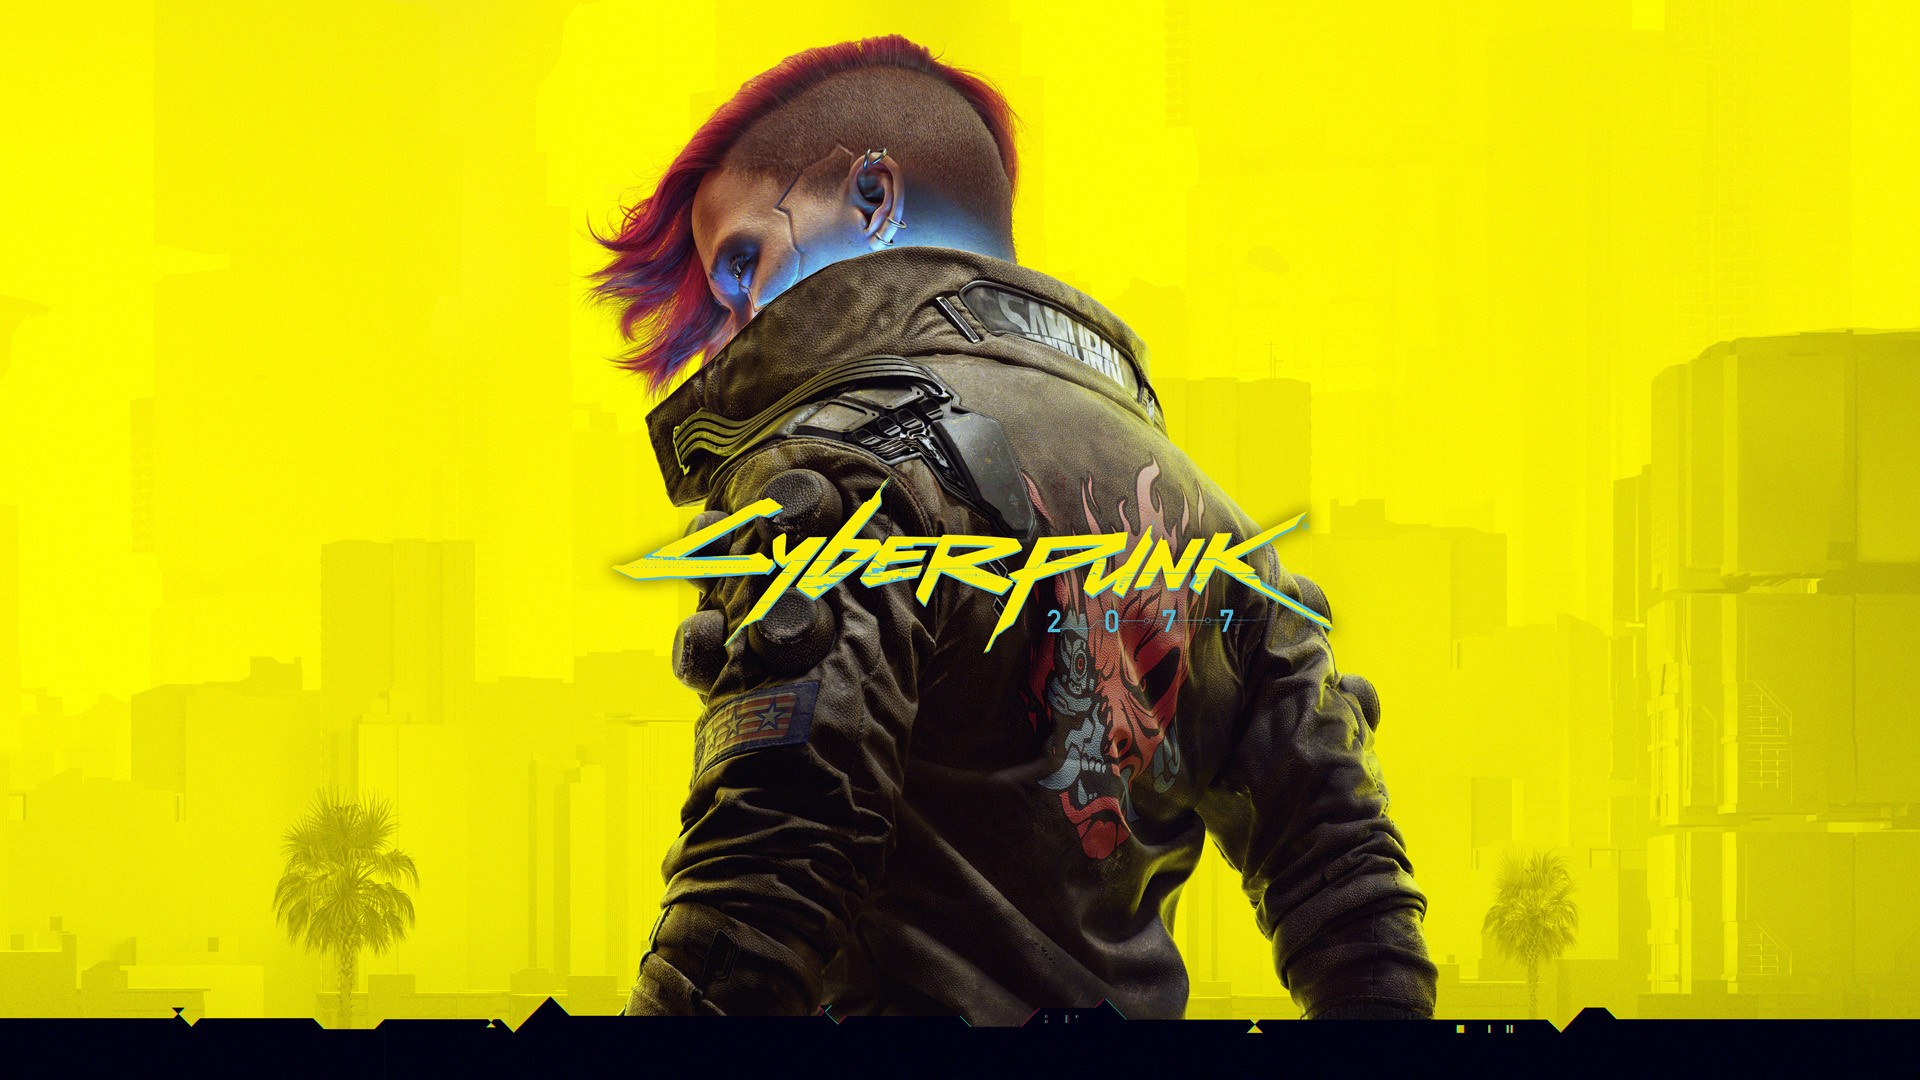 ‘Cyberpunk 2077’ ชนะรางวัลทำงานด้วยใจรัก (ประชด) จาก Steam Awards ประจำปี ค.ศ. 2022